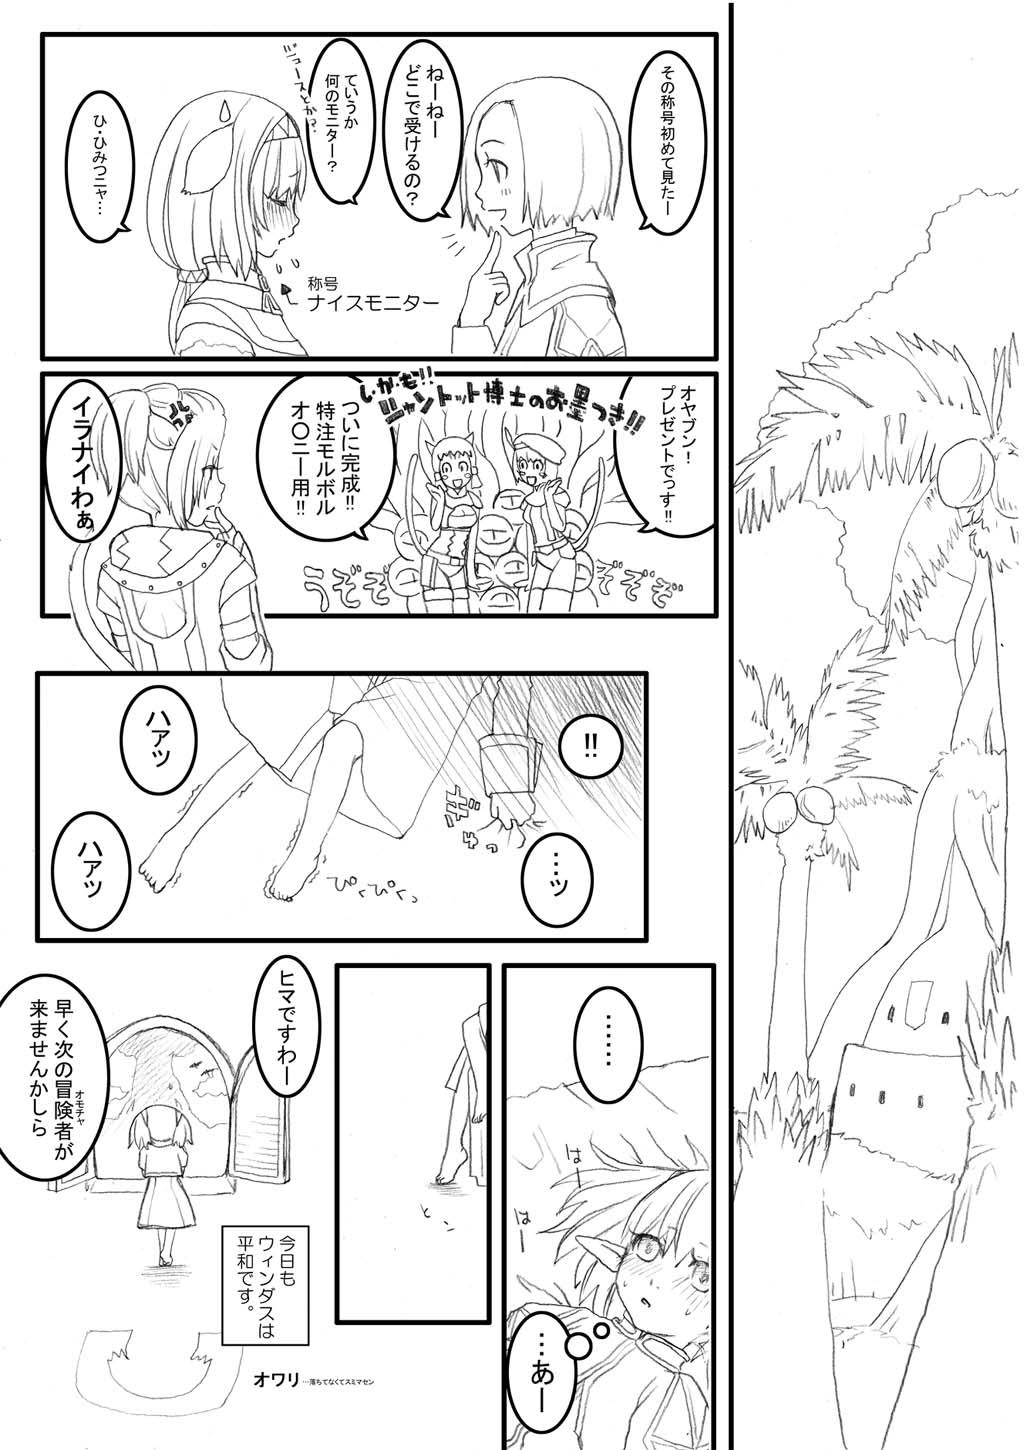 Natural Tits あれ - Final fantasy xi Flashing - Page 6